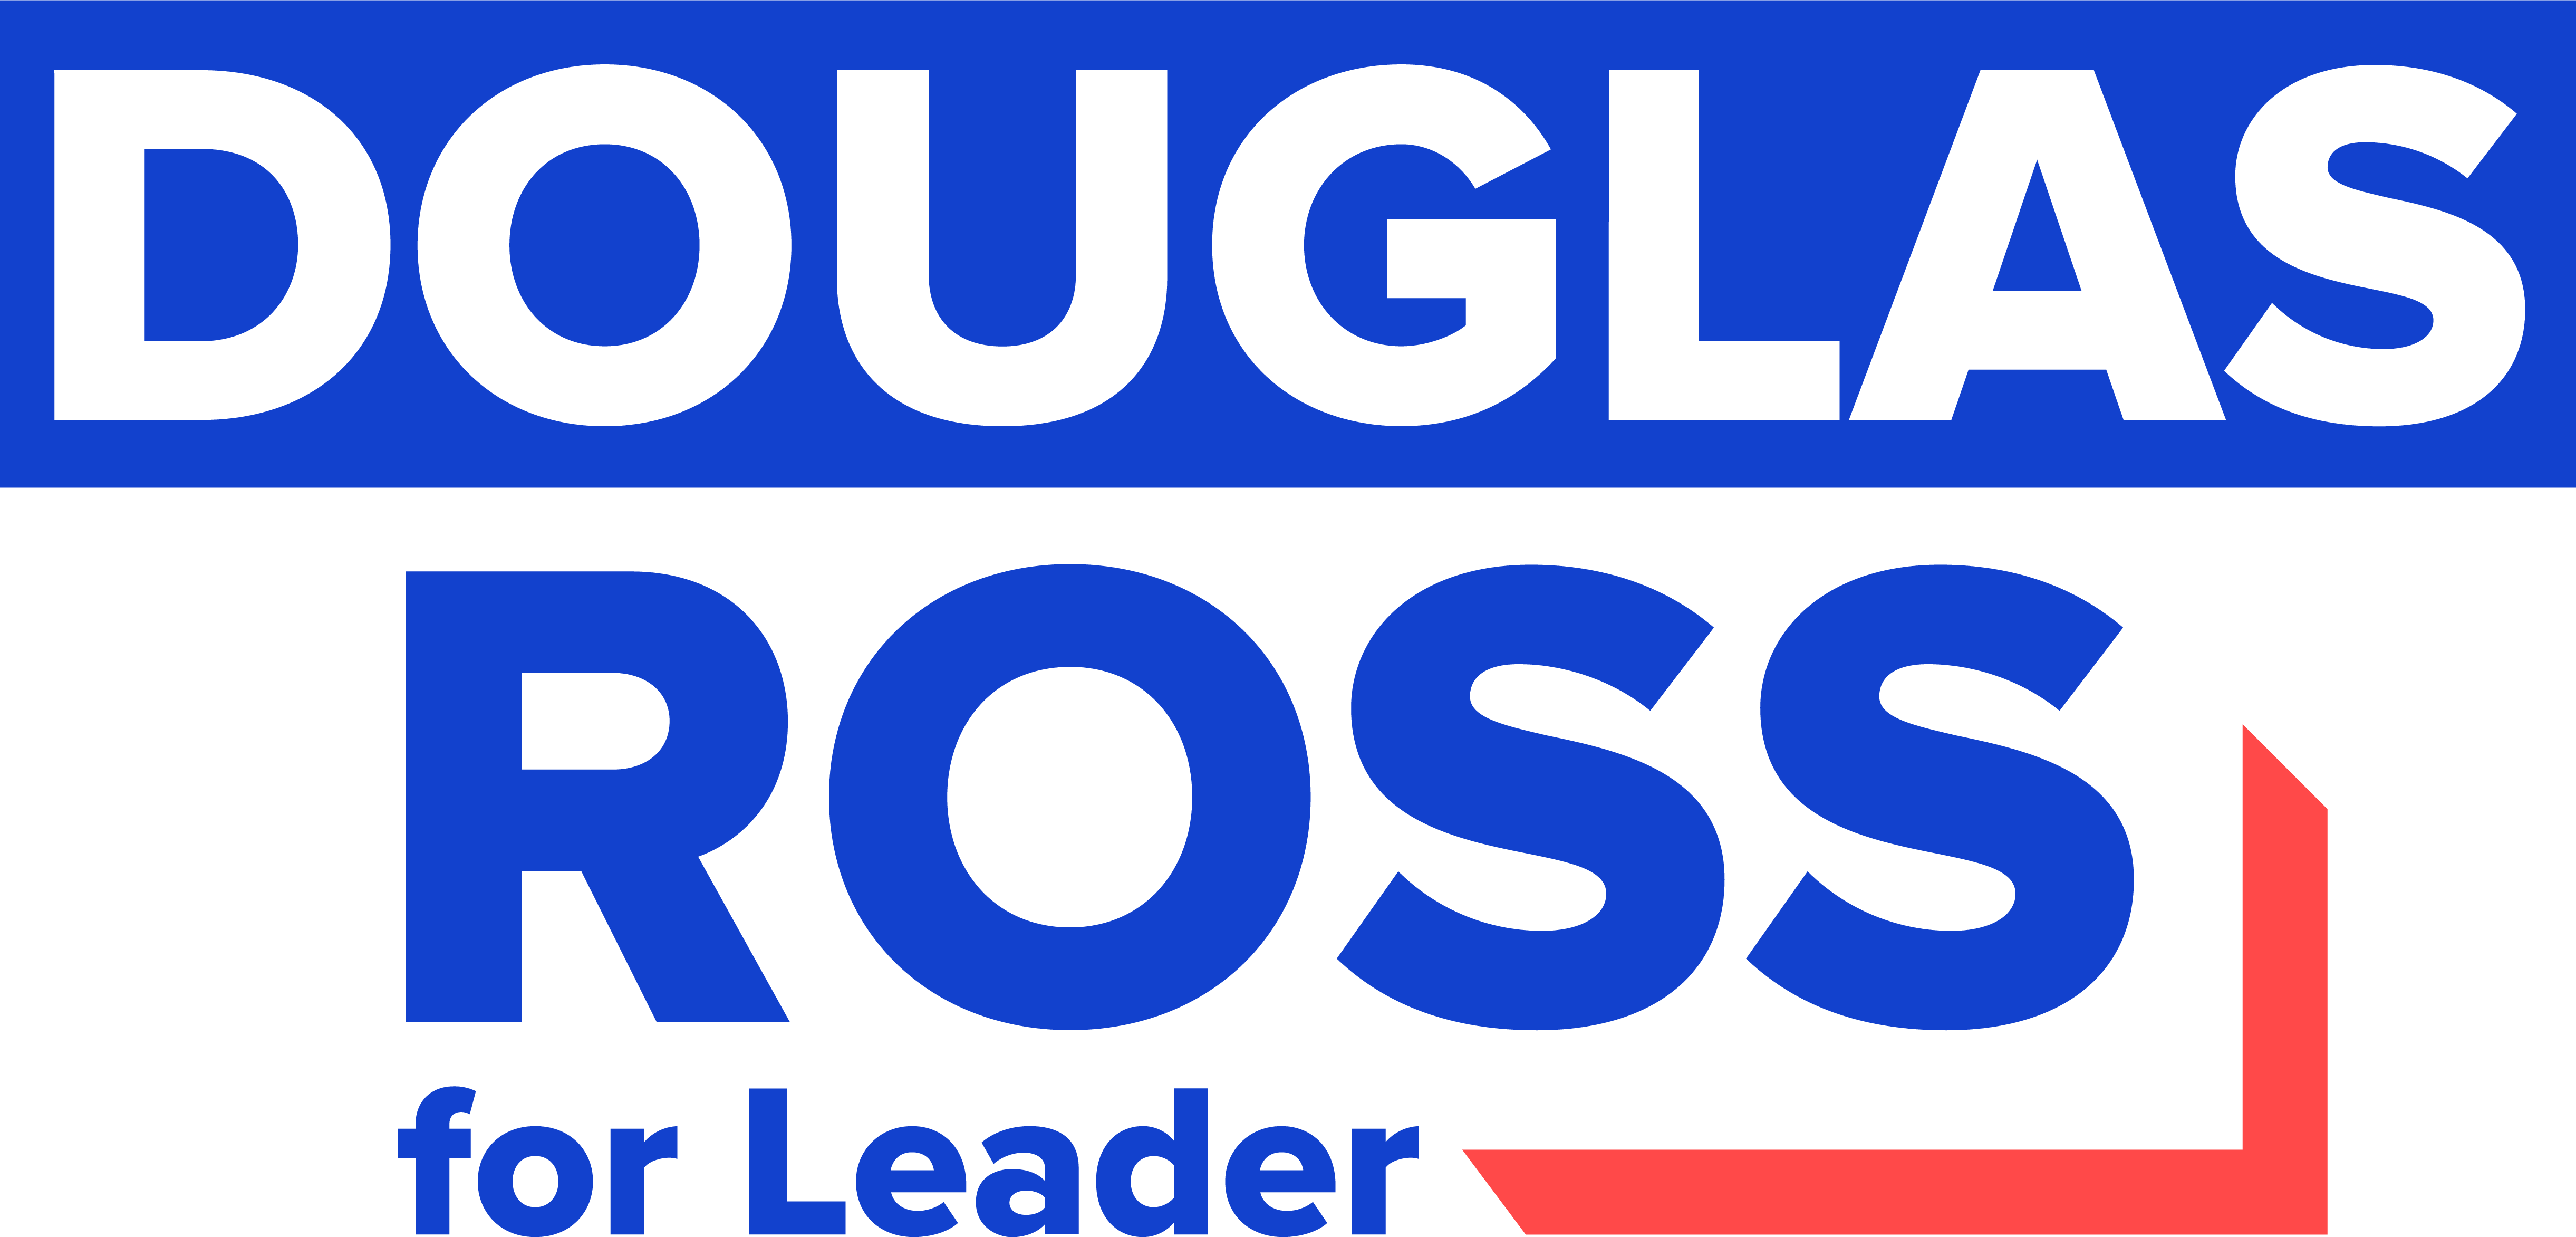 Douglas Ross for leader